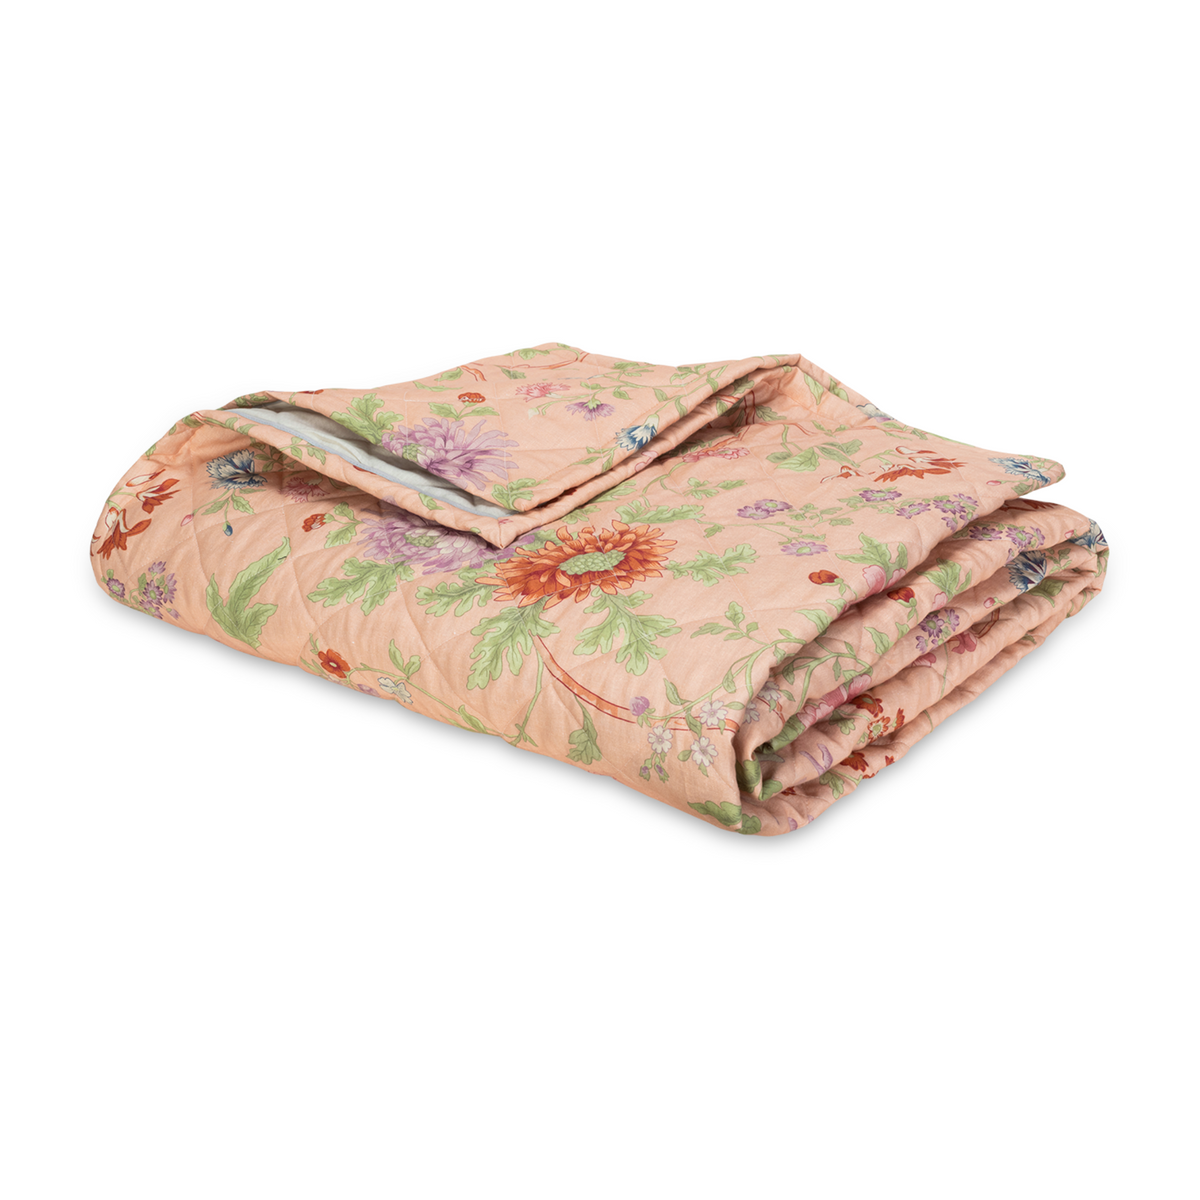 Folded Quilt of Matouk Schumacher Simone Linen Bedding Apricot Color